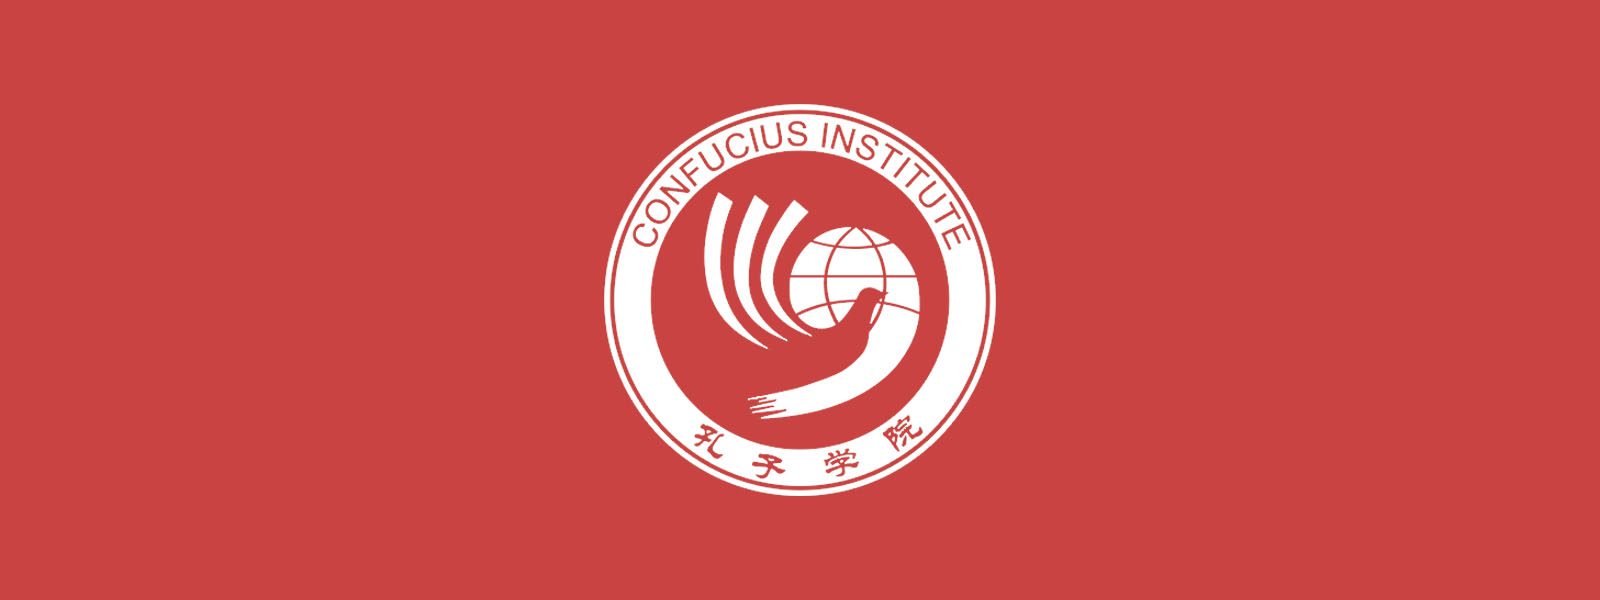 Bannière Institut Confucius